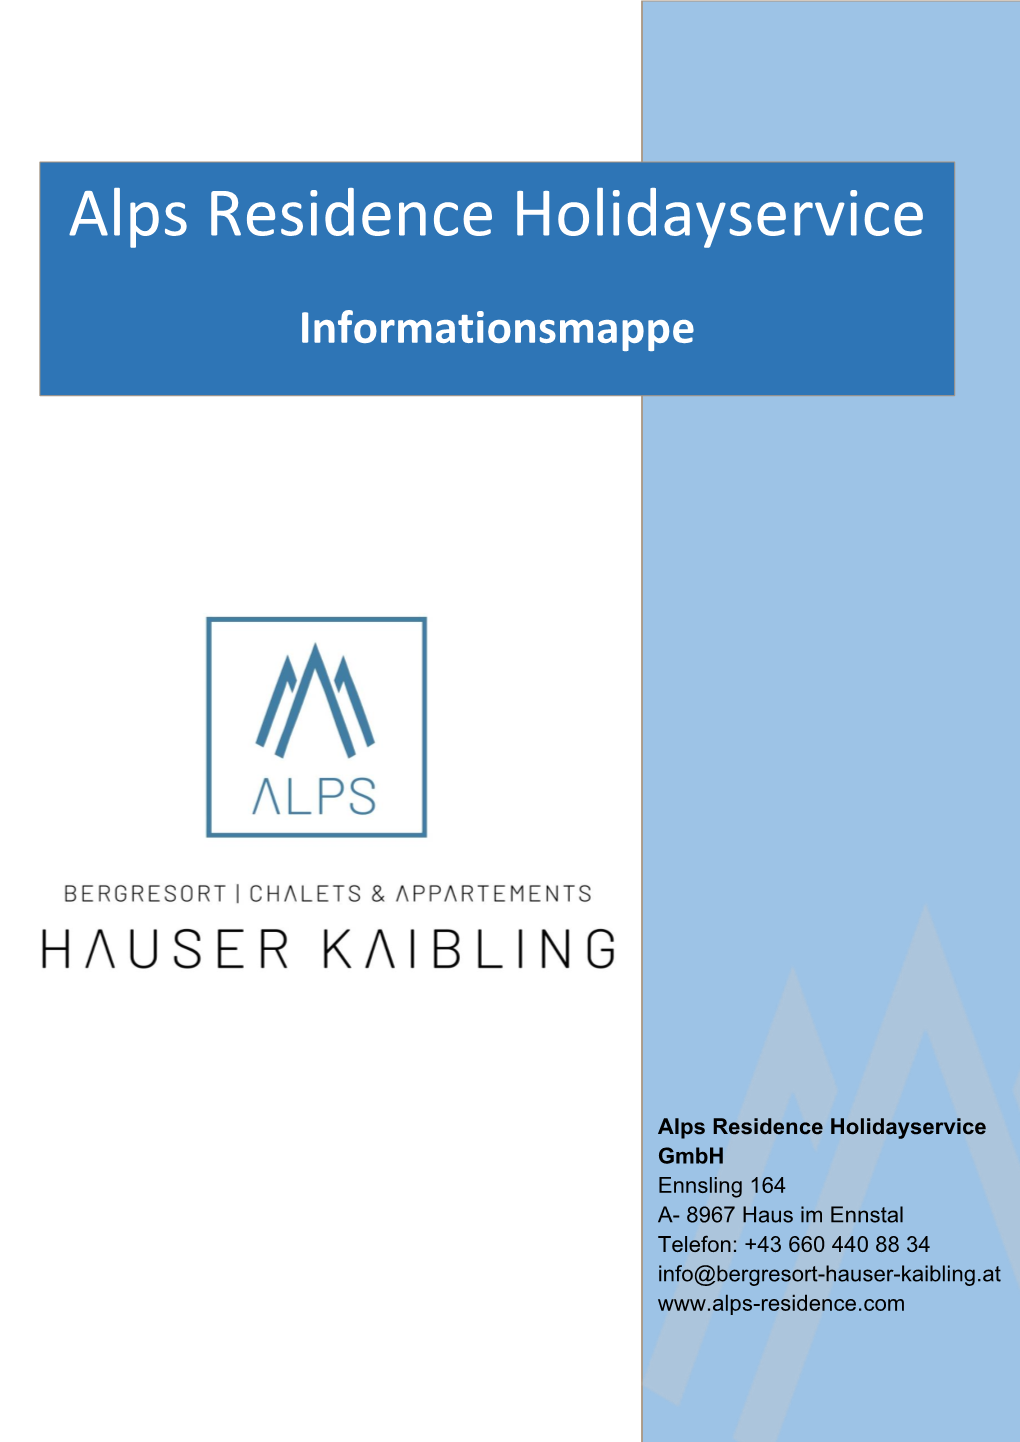 Alps Residence Holidayservice Informationsmappe